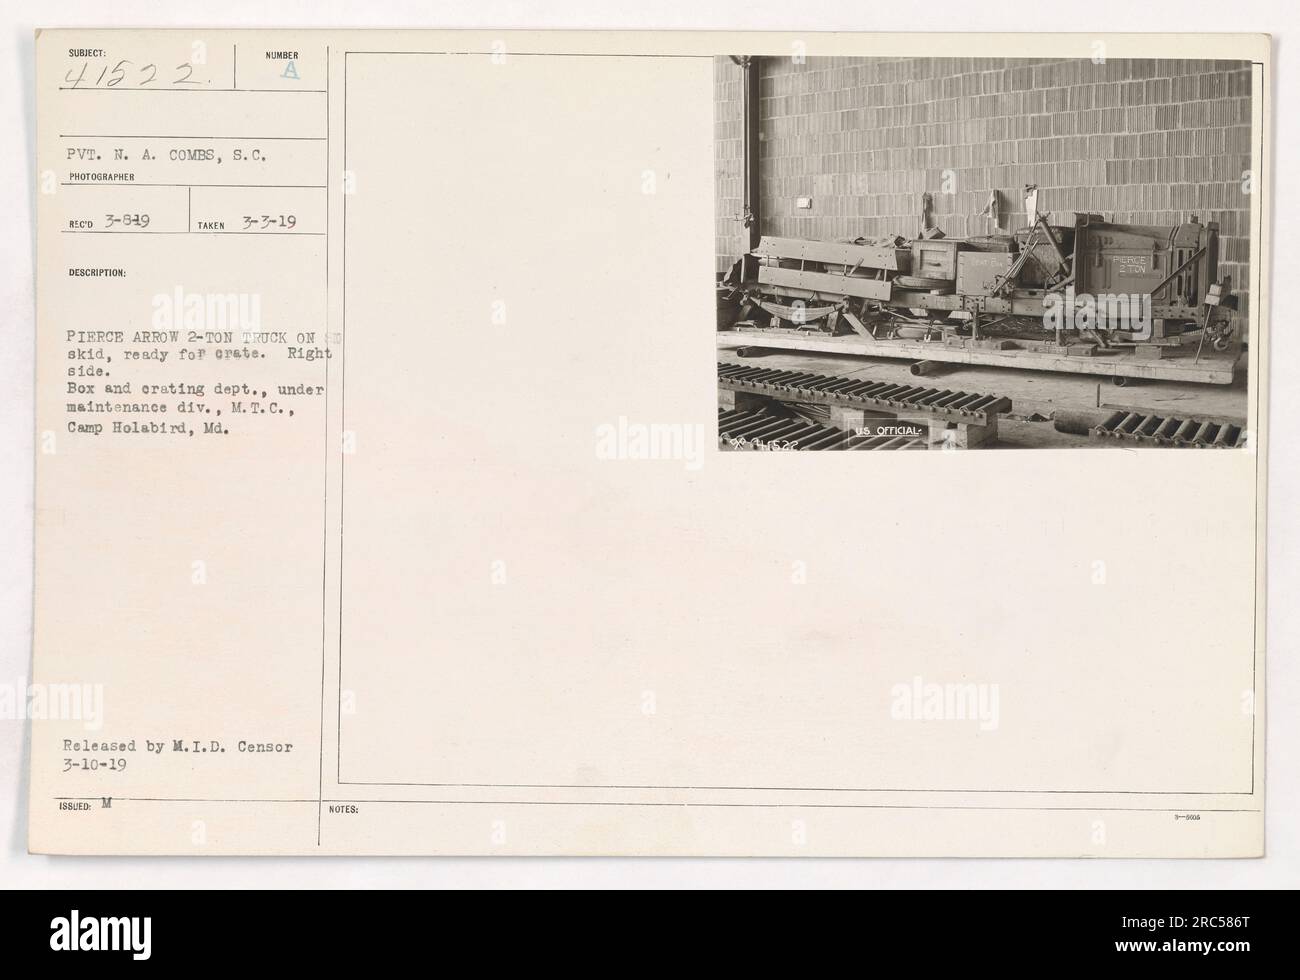 'Privato N.A. Combs, un fotografo ufficiale, ha catturato questa immagine il 3 marzo 1919 a Camp Holabird, Maryland. La fotografia mostra un camion Pierce Arrow 2-Ton su un pattino, preparato per il calcestruzzo. Questo camion appartiene alla divisione manutenzione del Motor Transport Corps a Camp Holabird." Foto Stock